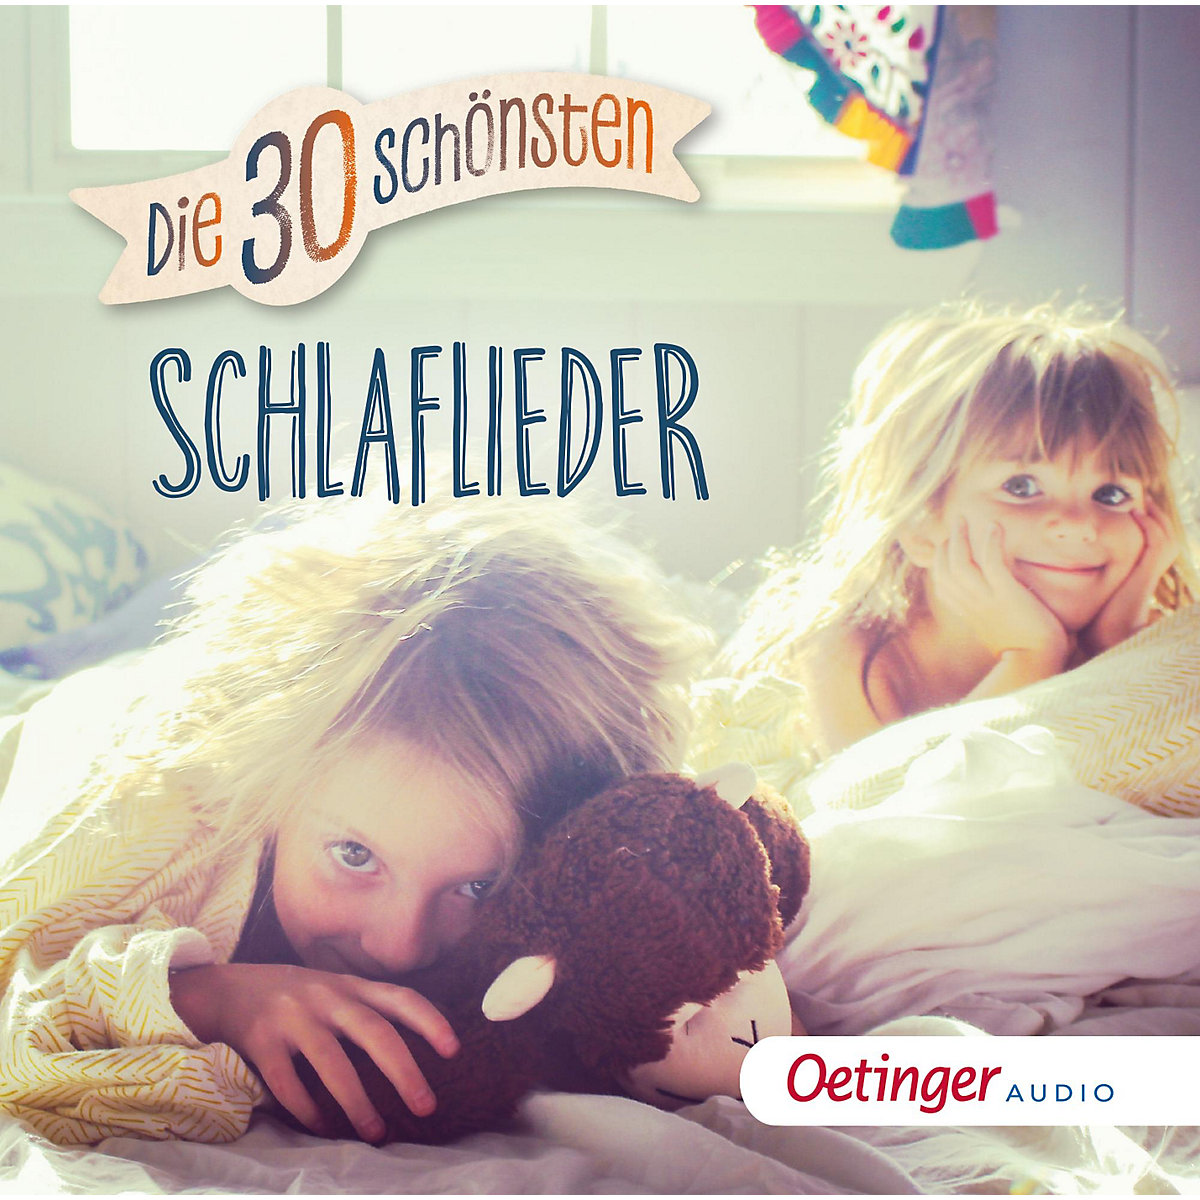 Oetinger Media GmbH CD Die 30 schönsten Schlaflieder